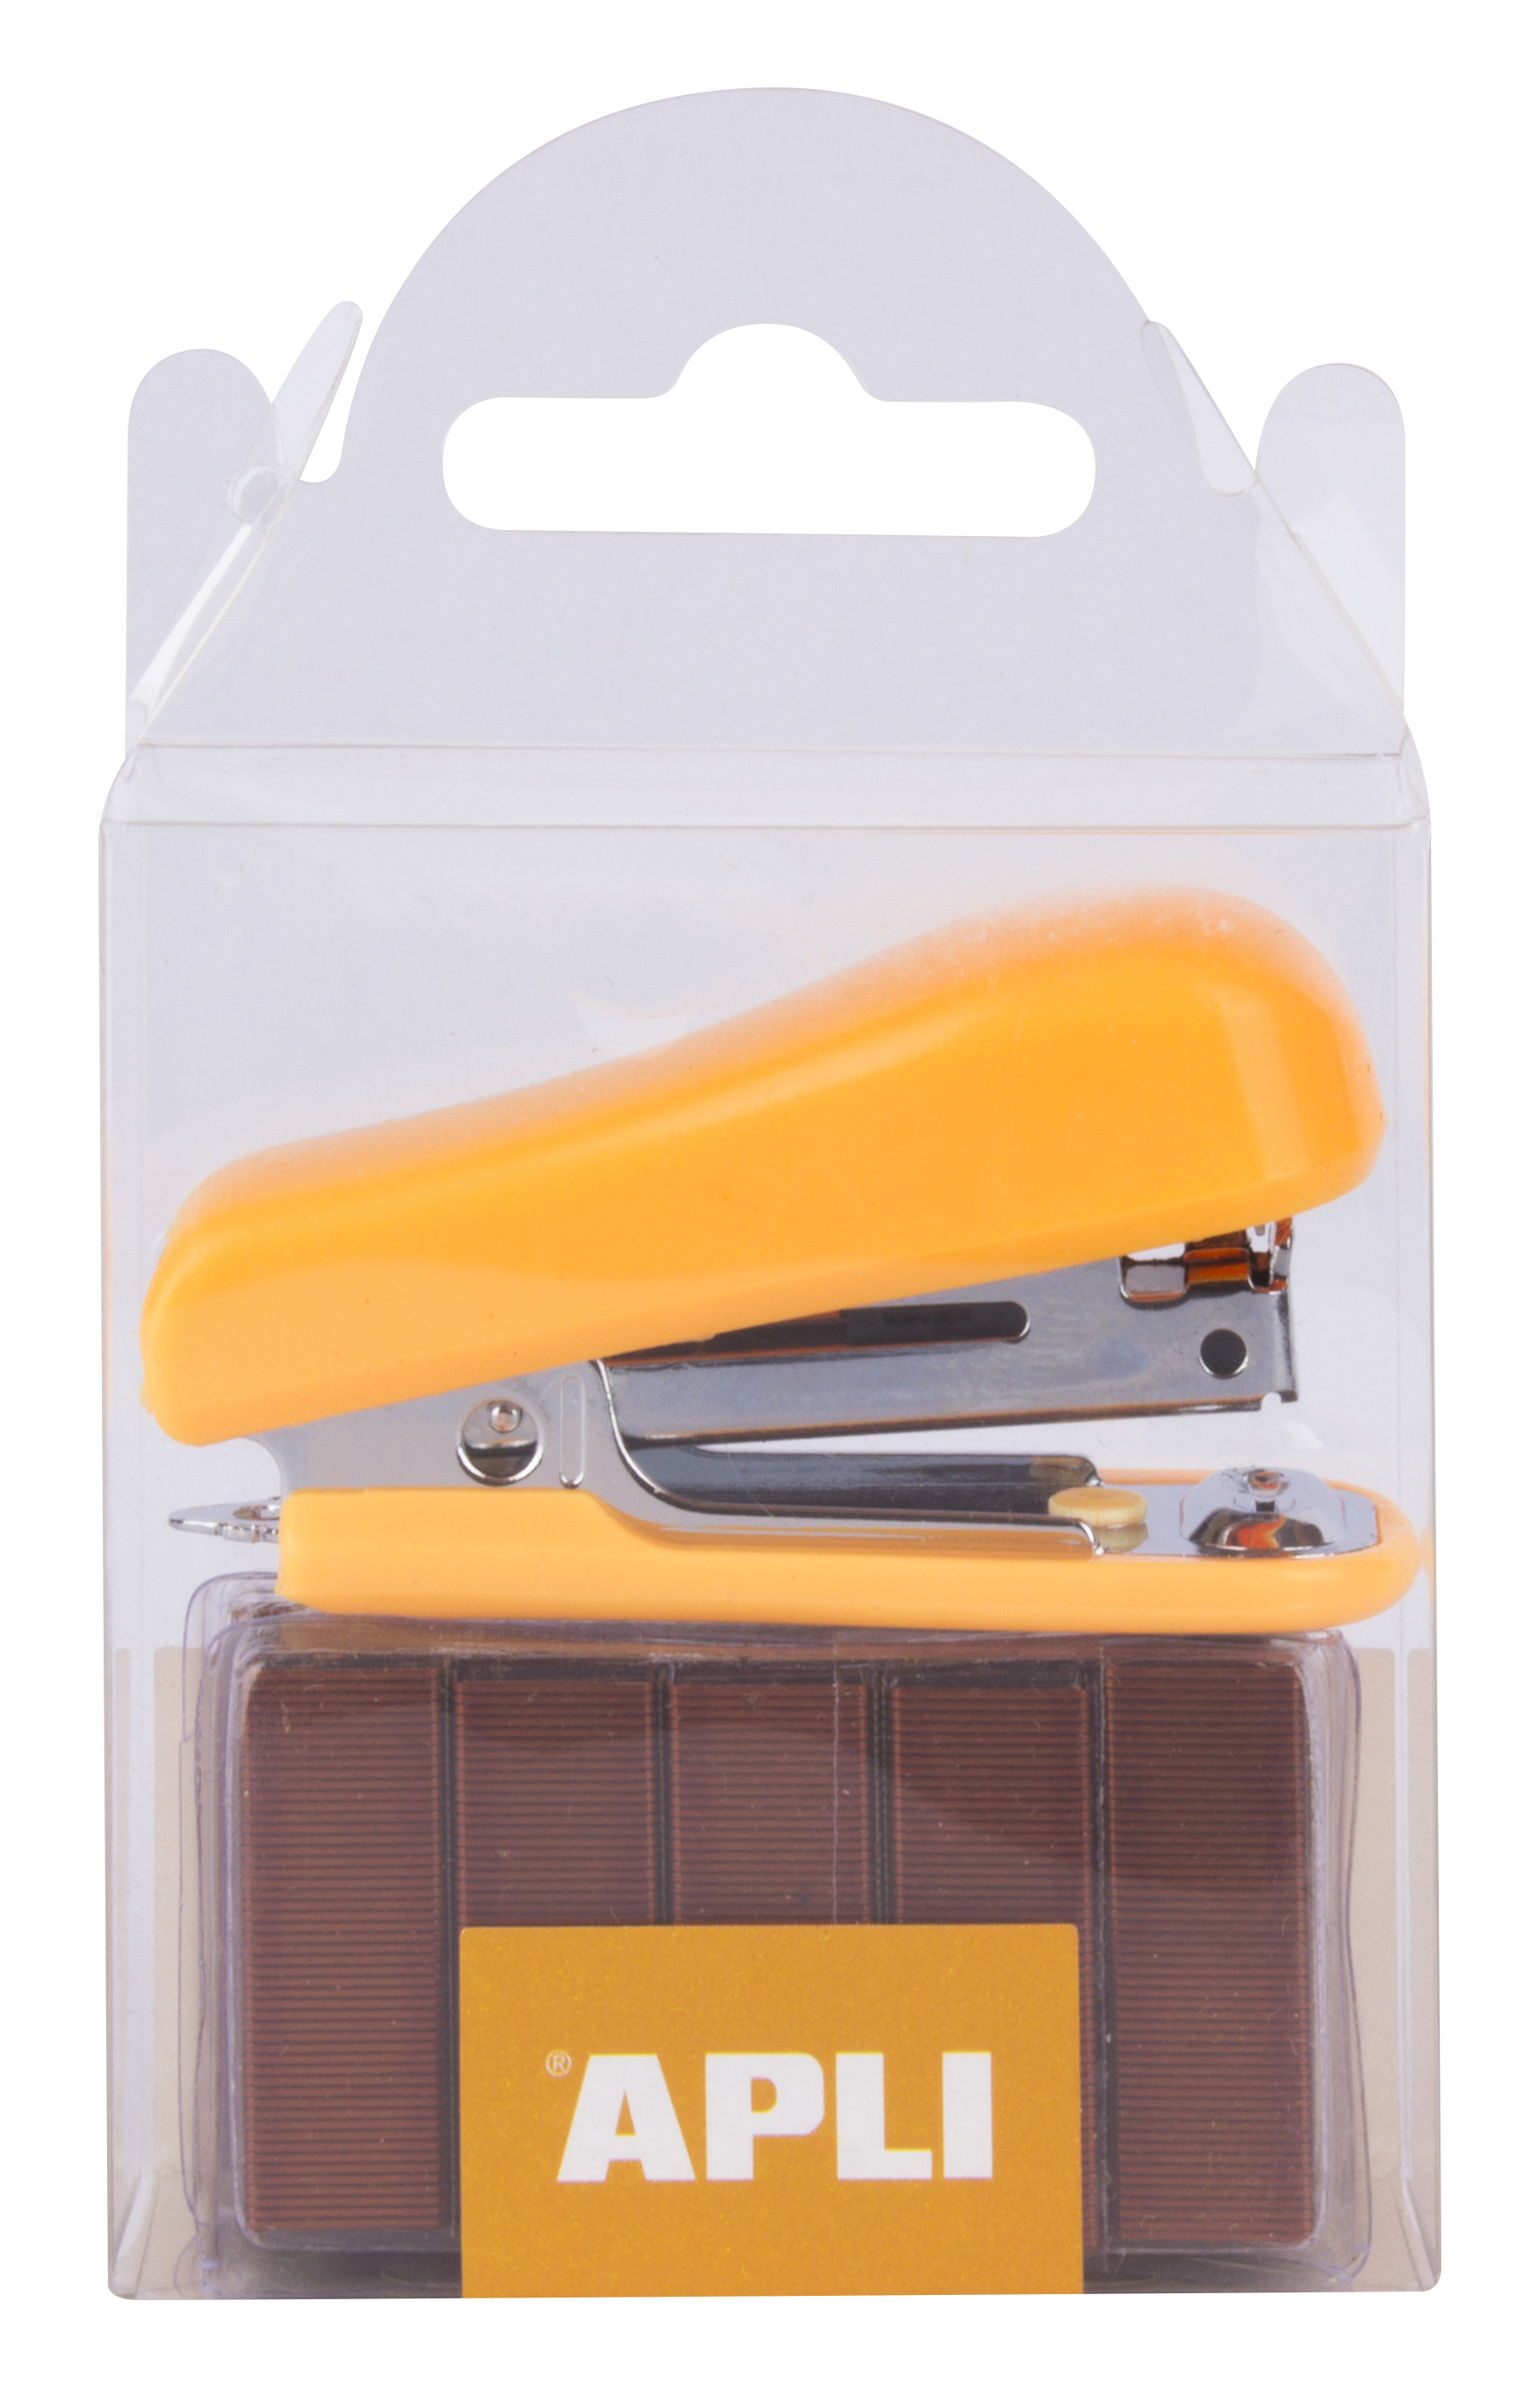 LOT de 5 Apli Pocket Orange Agrafeuse - Taille 56 mm - Compacte et légère - Capacité d'agrafage jusqu'à 20 feuilles